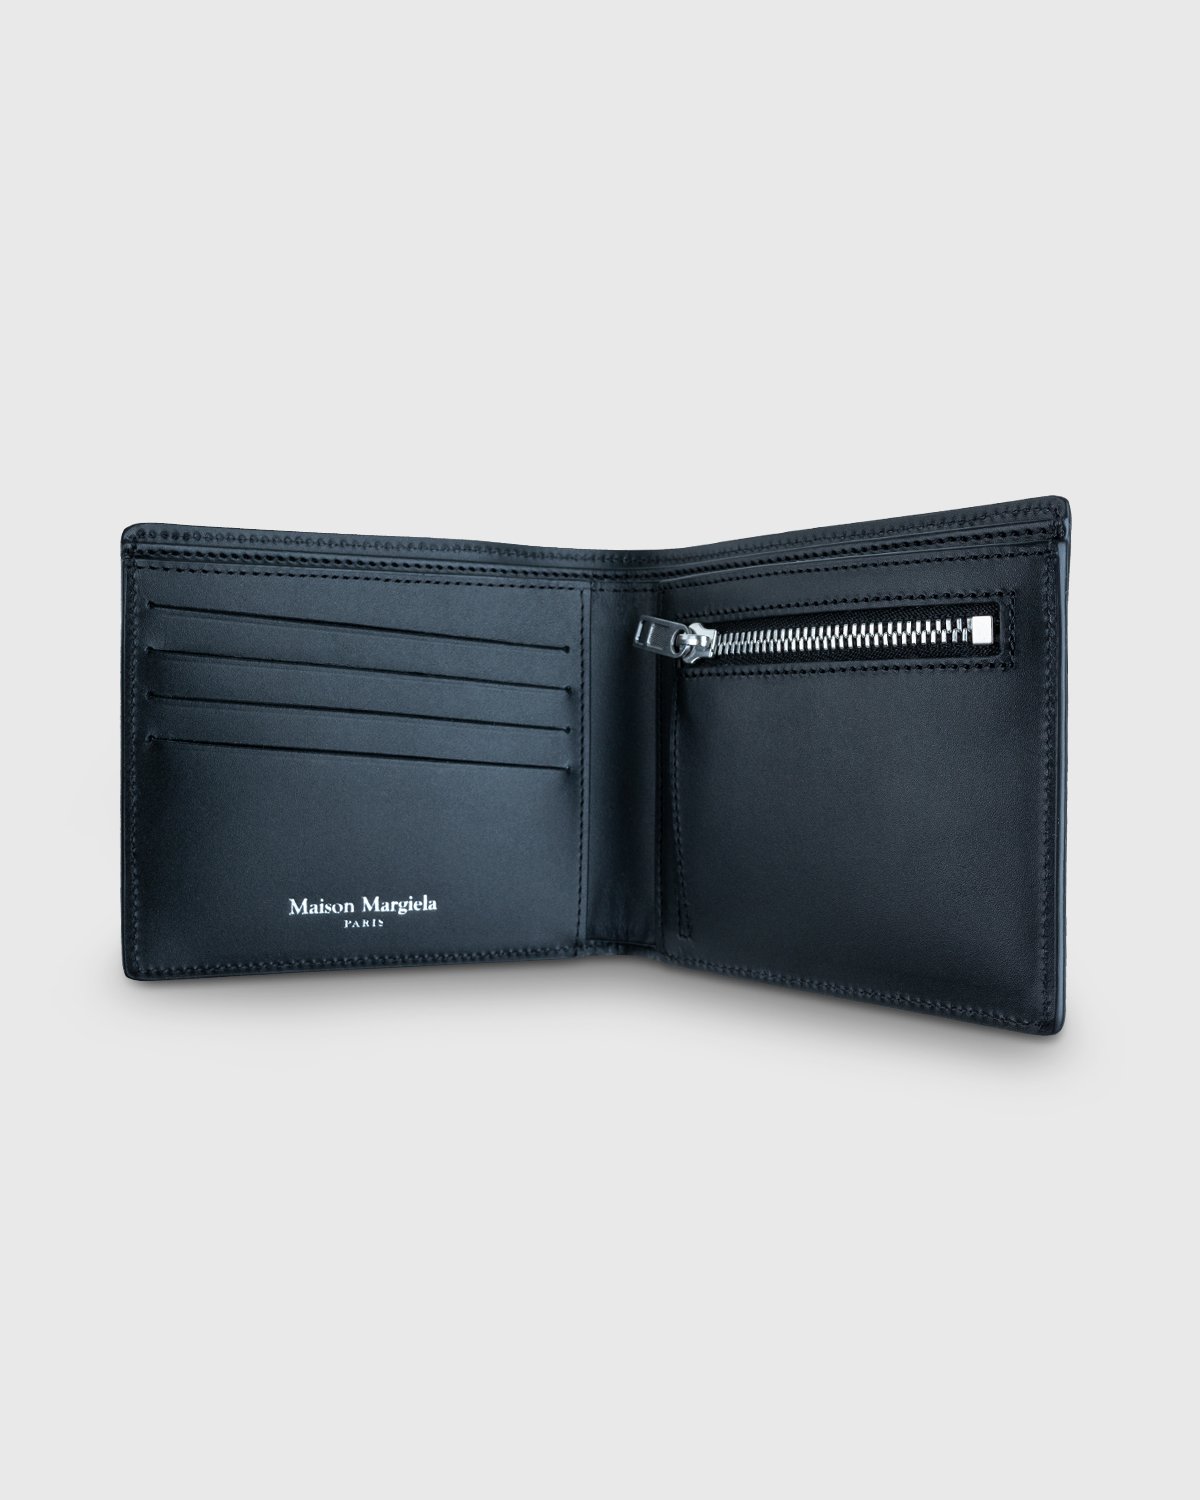 Maison Margiela - Leather Wallet Black - Accessories - Black - Image 3